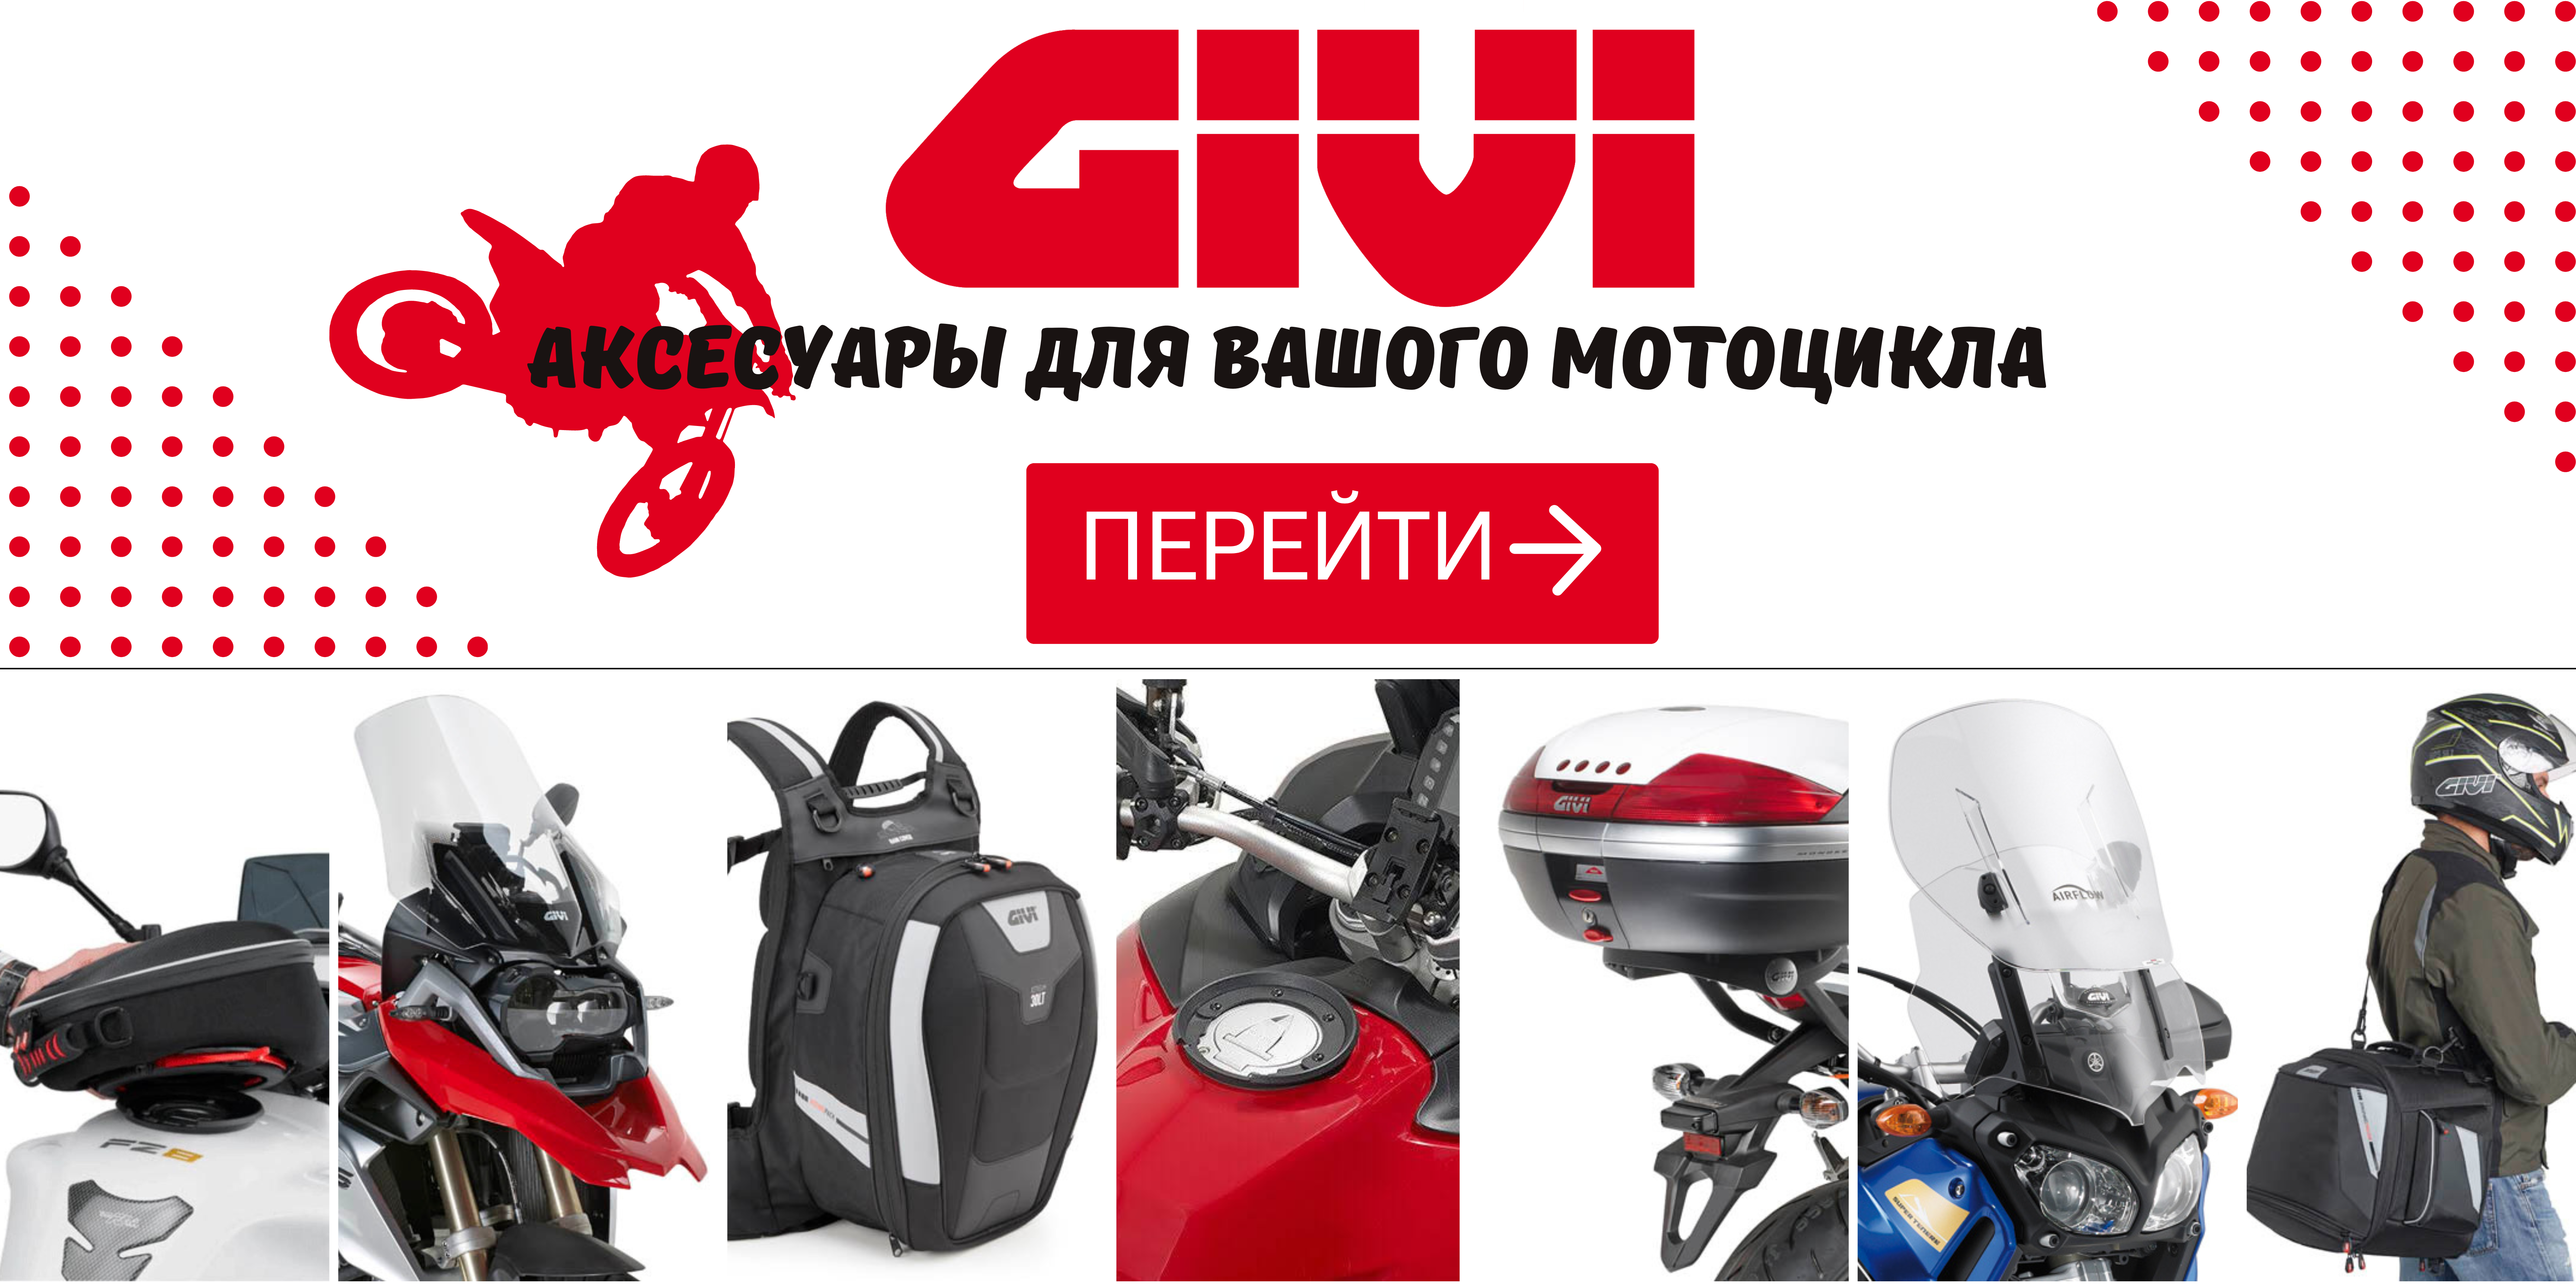 Homepage Givi